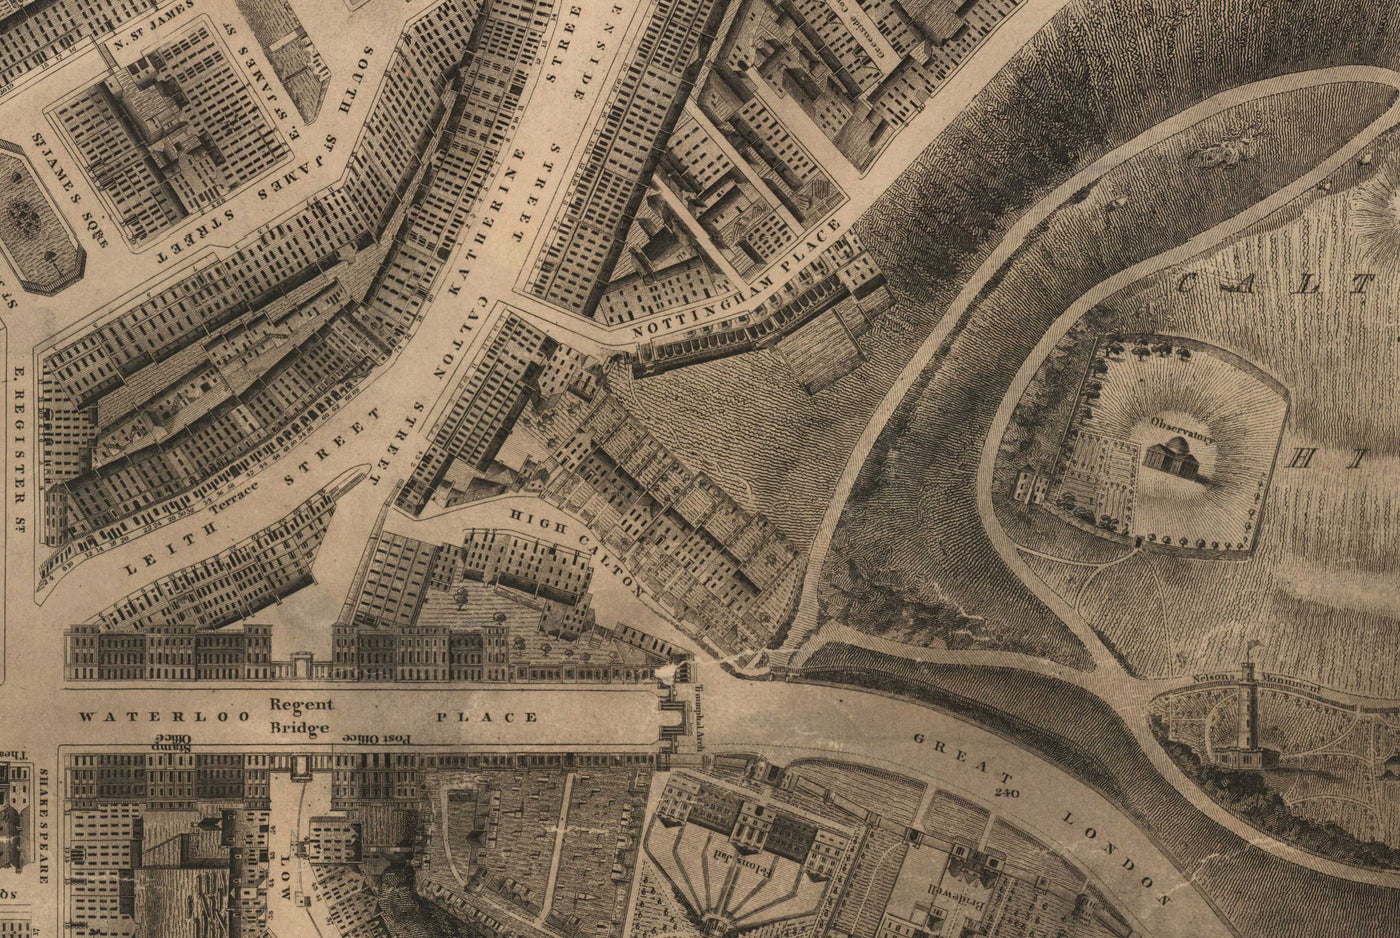 Alte Karte von New Town, Edinburgh im Jahr 1821 von James Kirkwood - Calton Hill, Queen Street, York Place, Prince Street, Great King Street